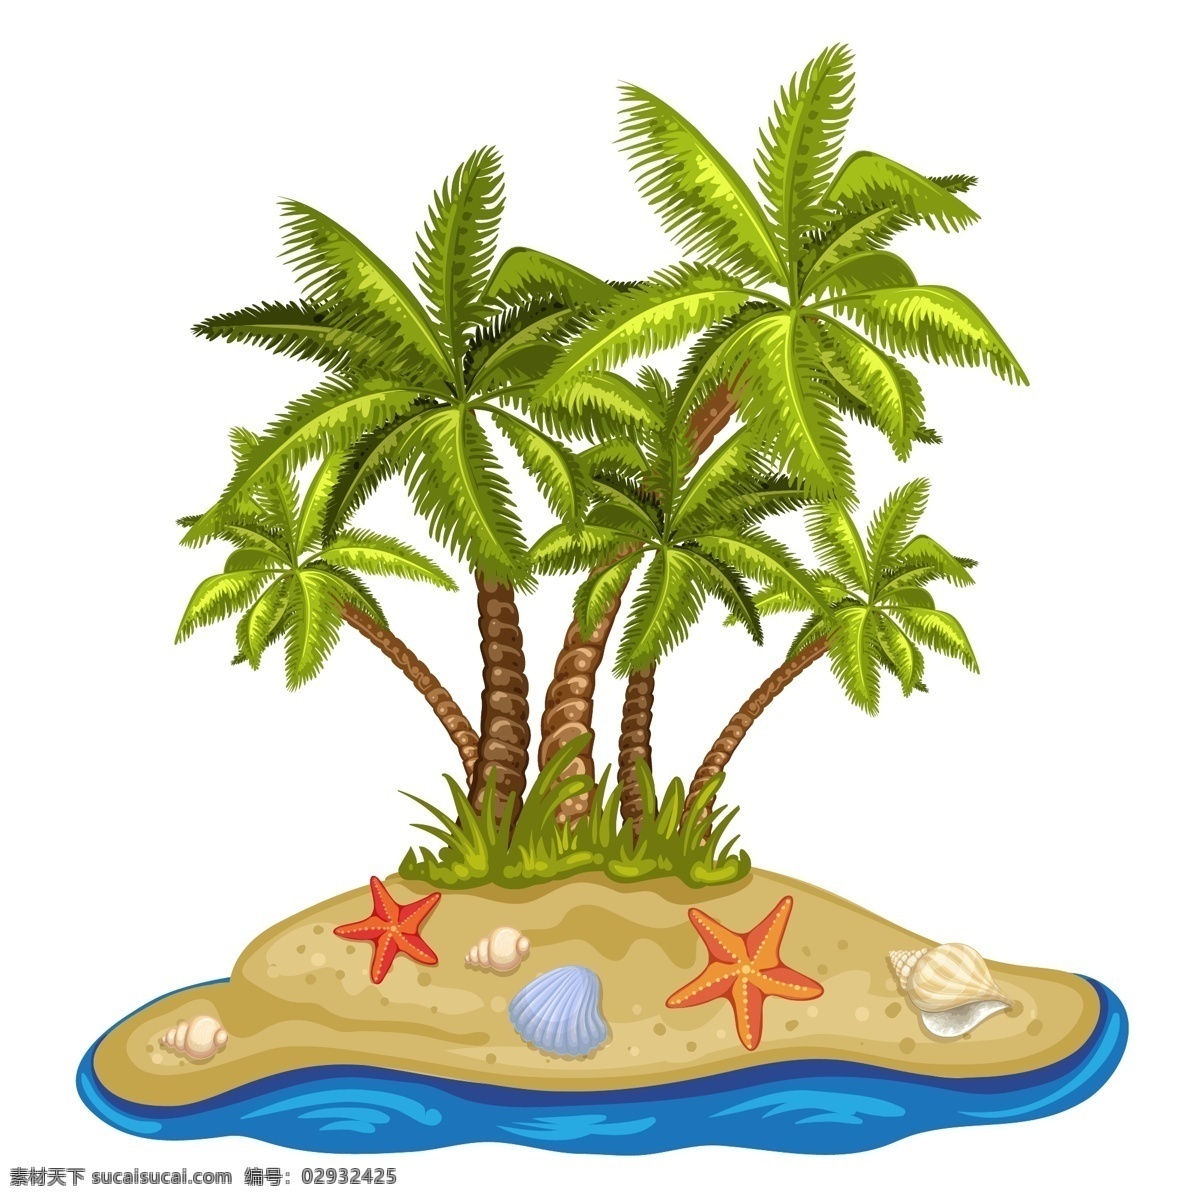 小岛 海洋 海滩 度假 背景 矢量 岛屿 海水 海星 卡通 手绘 夏天 沙滩 椰子树 高清 仿真 植物